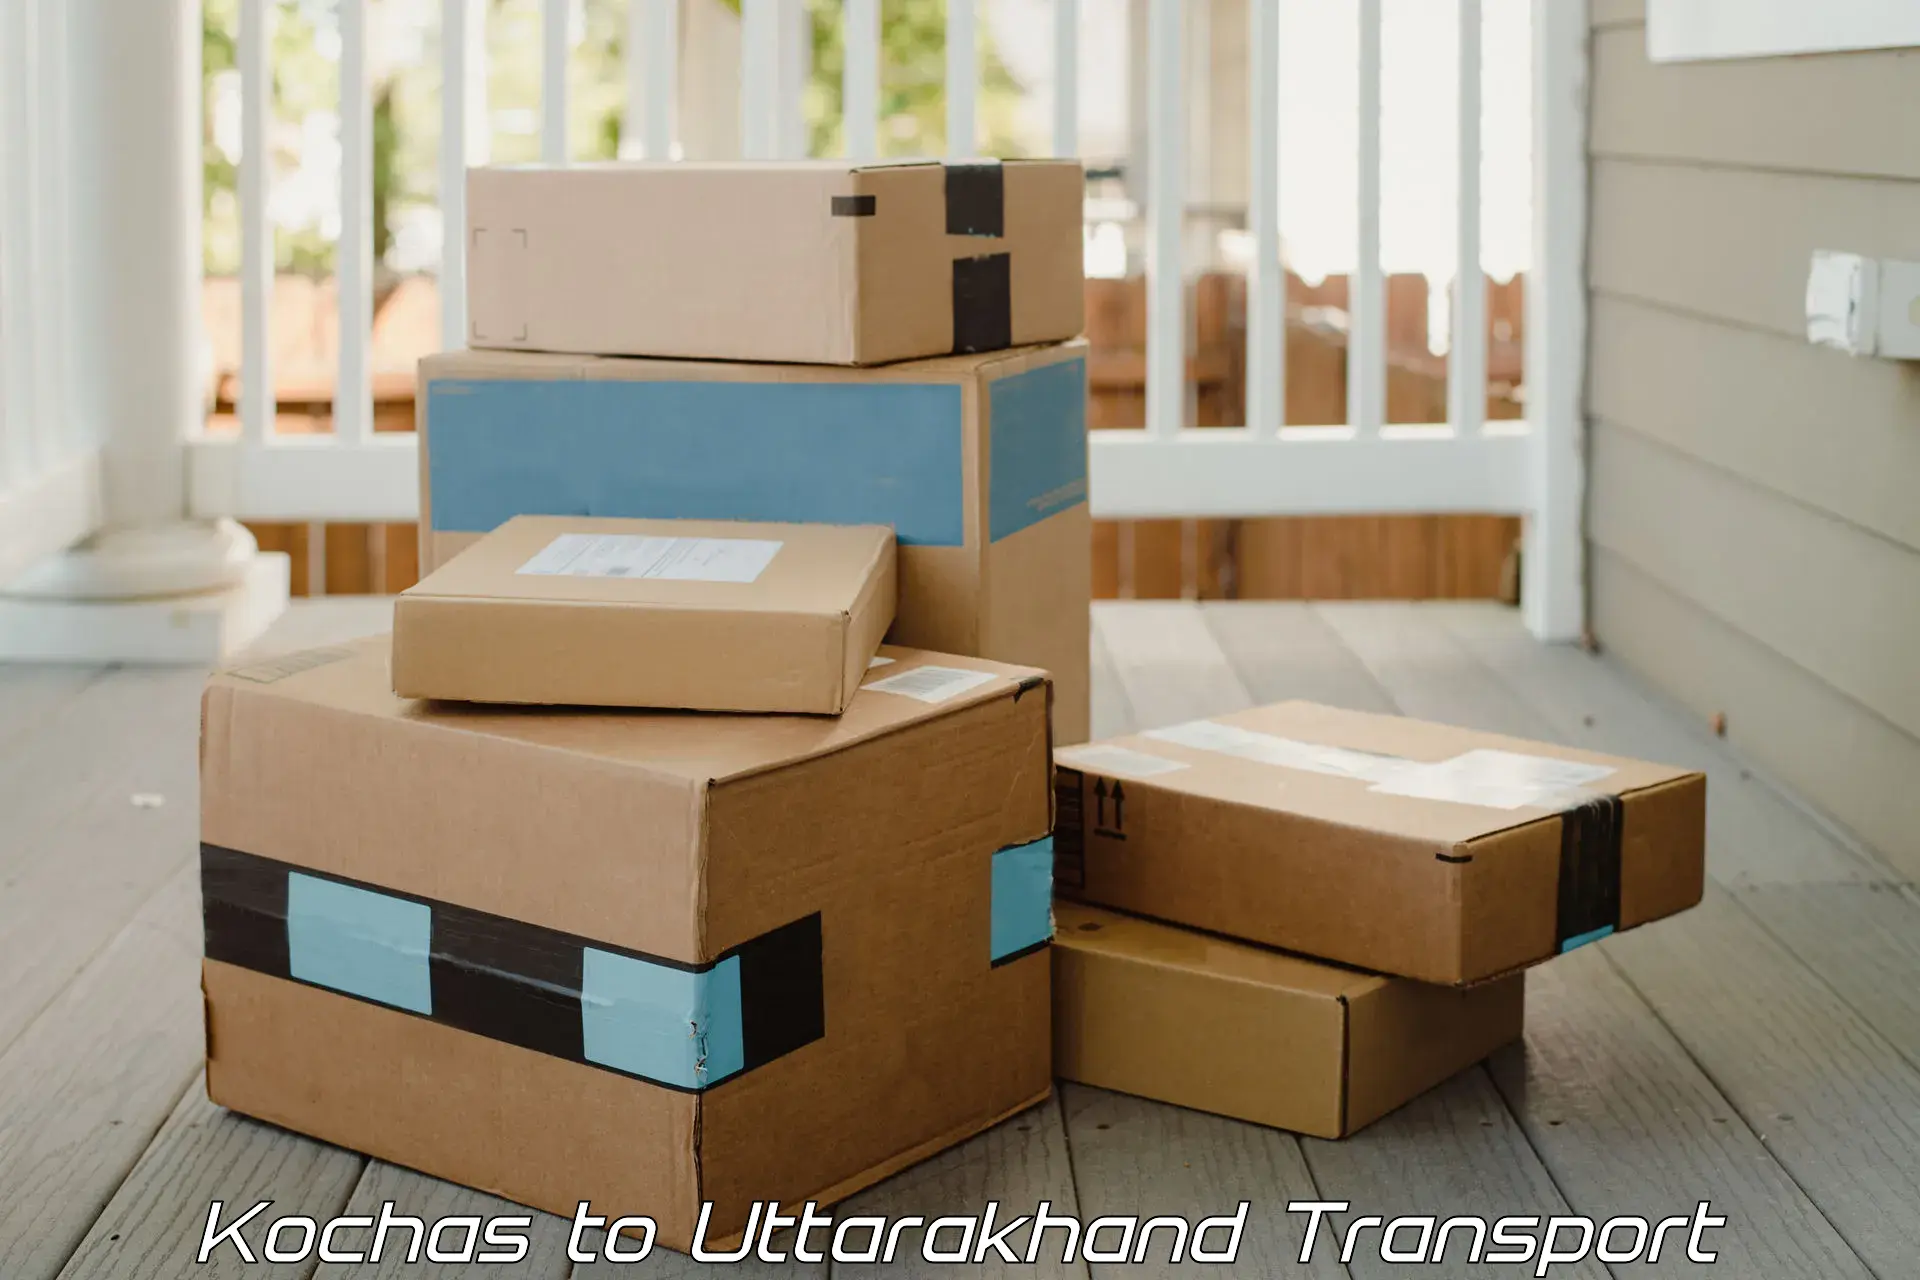 Container transport service Kochas to Uttarakhand